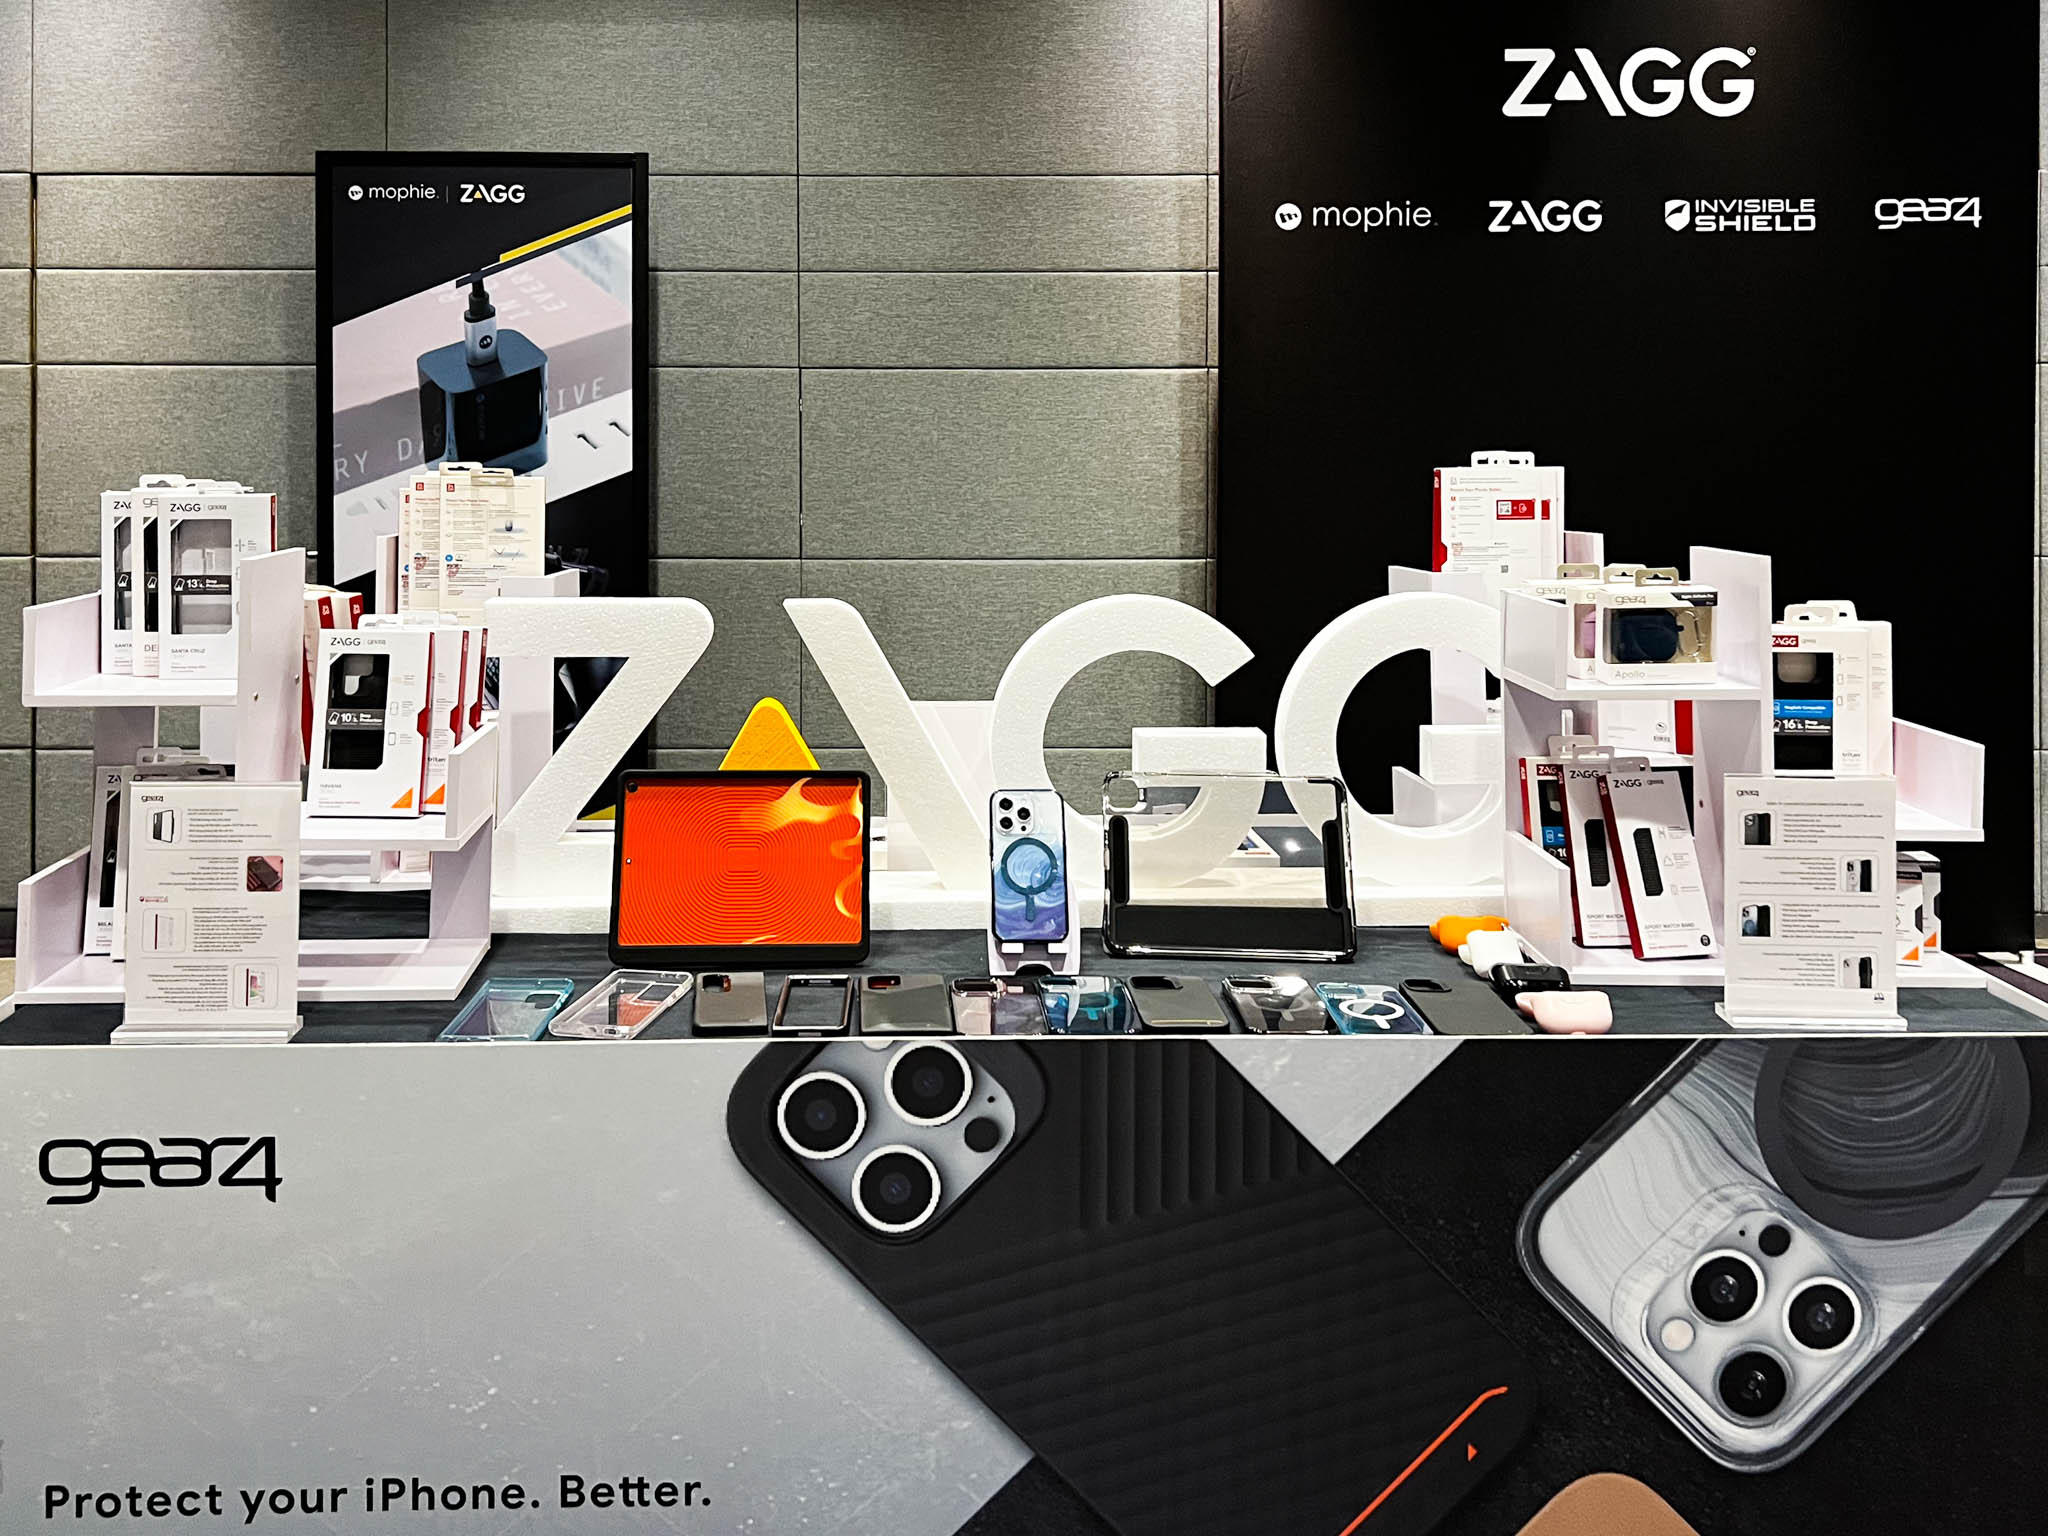 DTR giới thiệu hệ sinh thái ZAGG 2022 với mophie, InvisibleShield, Gear4 và ZAGG